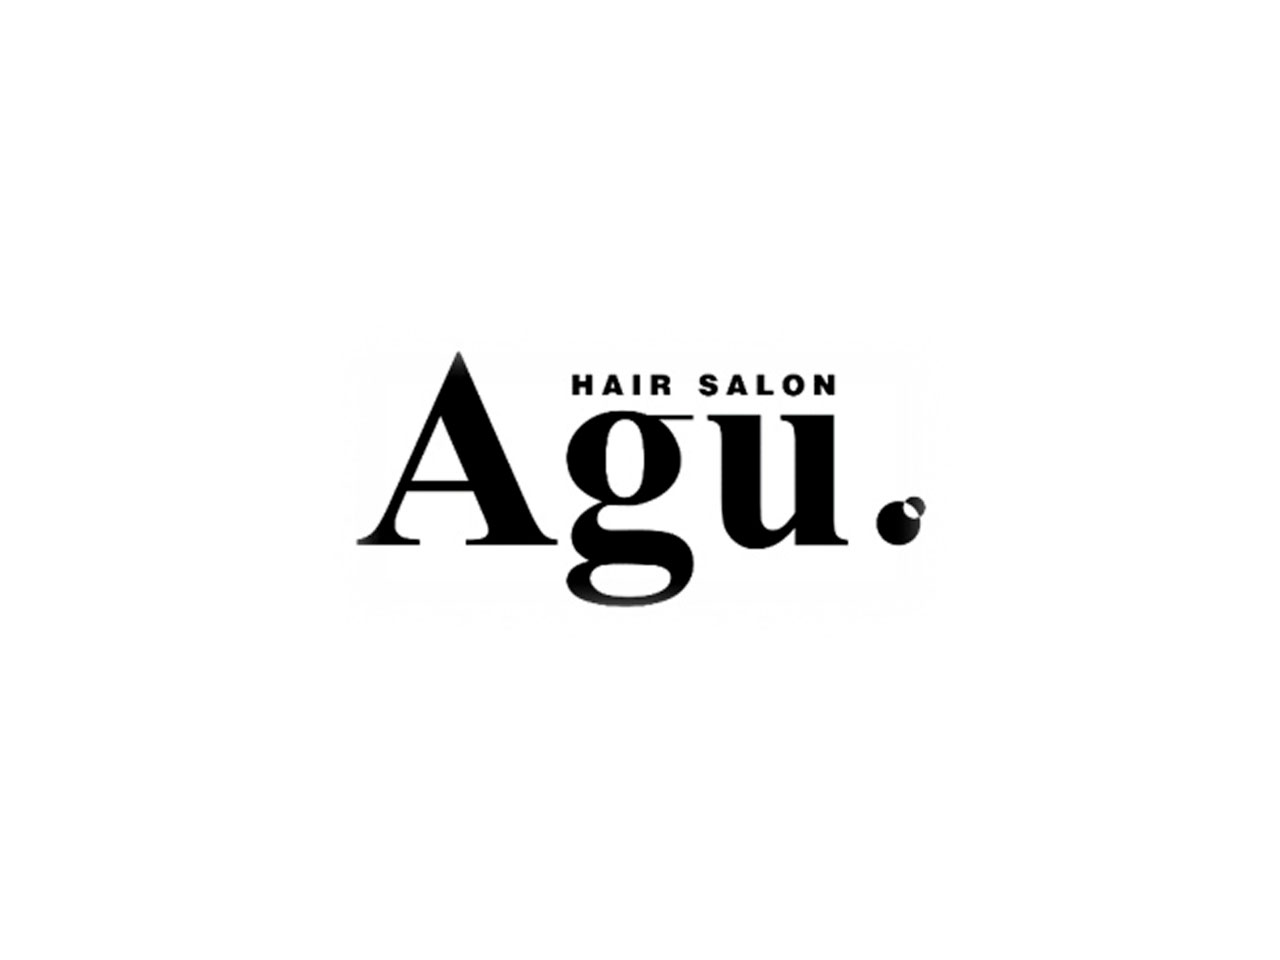 同社は『Agu.』ブランドをはじめ、全国47都道府県に約700店舗の美容室・理髪店等を展開。